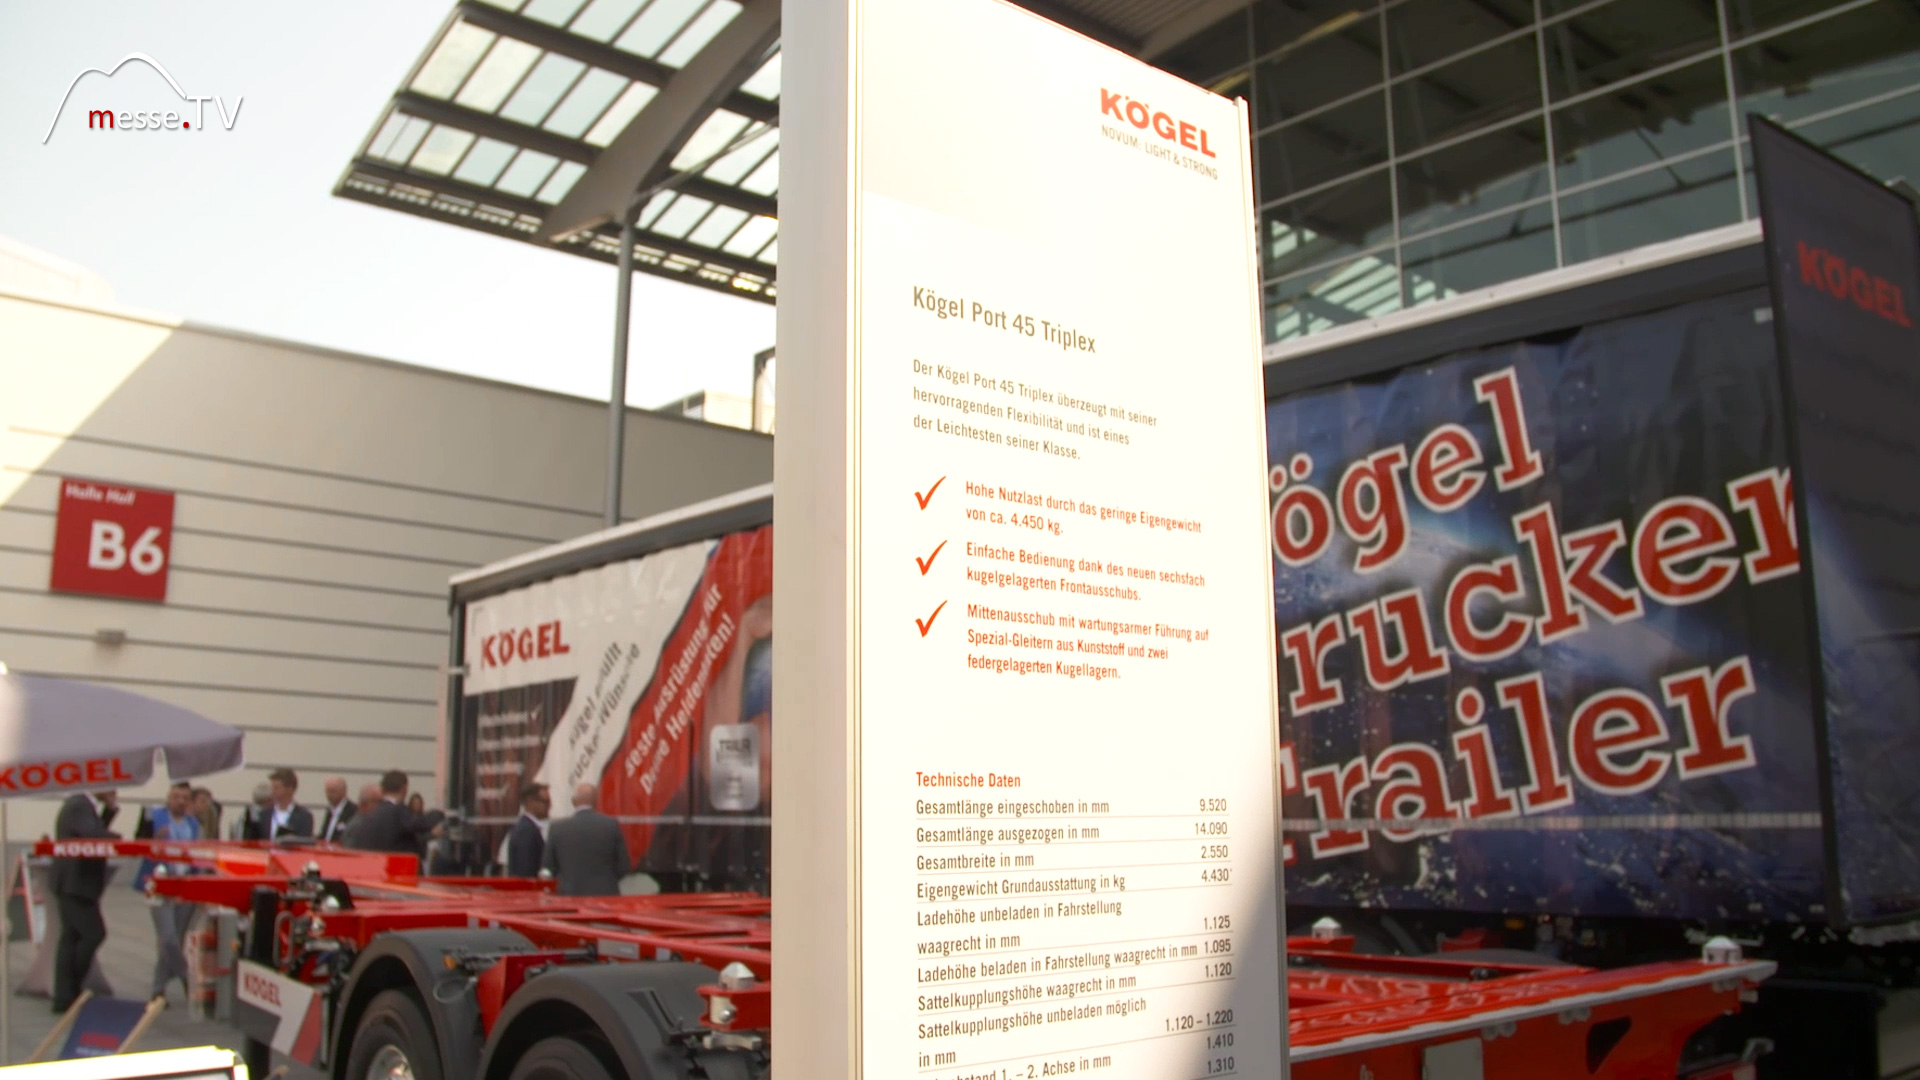 Koegel Trailer transport logistic 2019 Munich Trade Fair